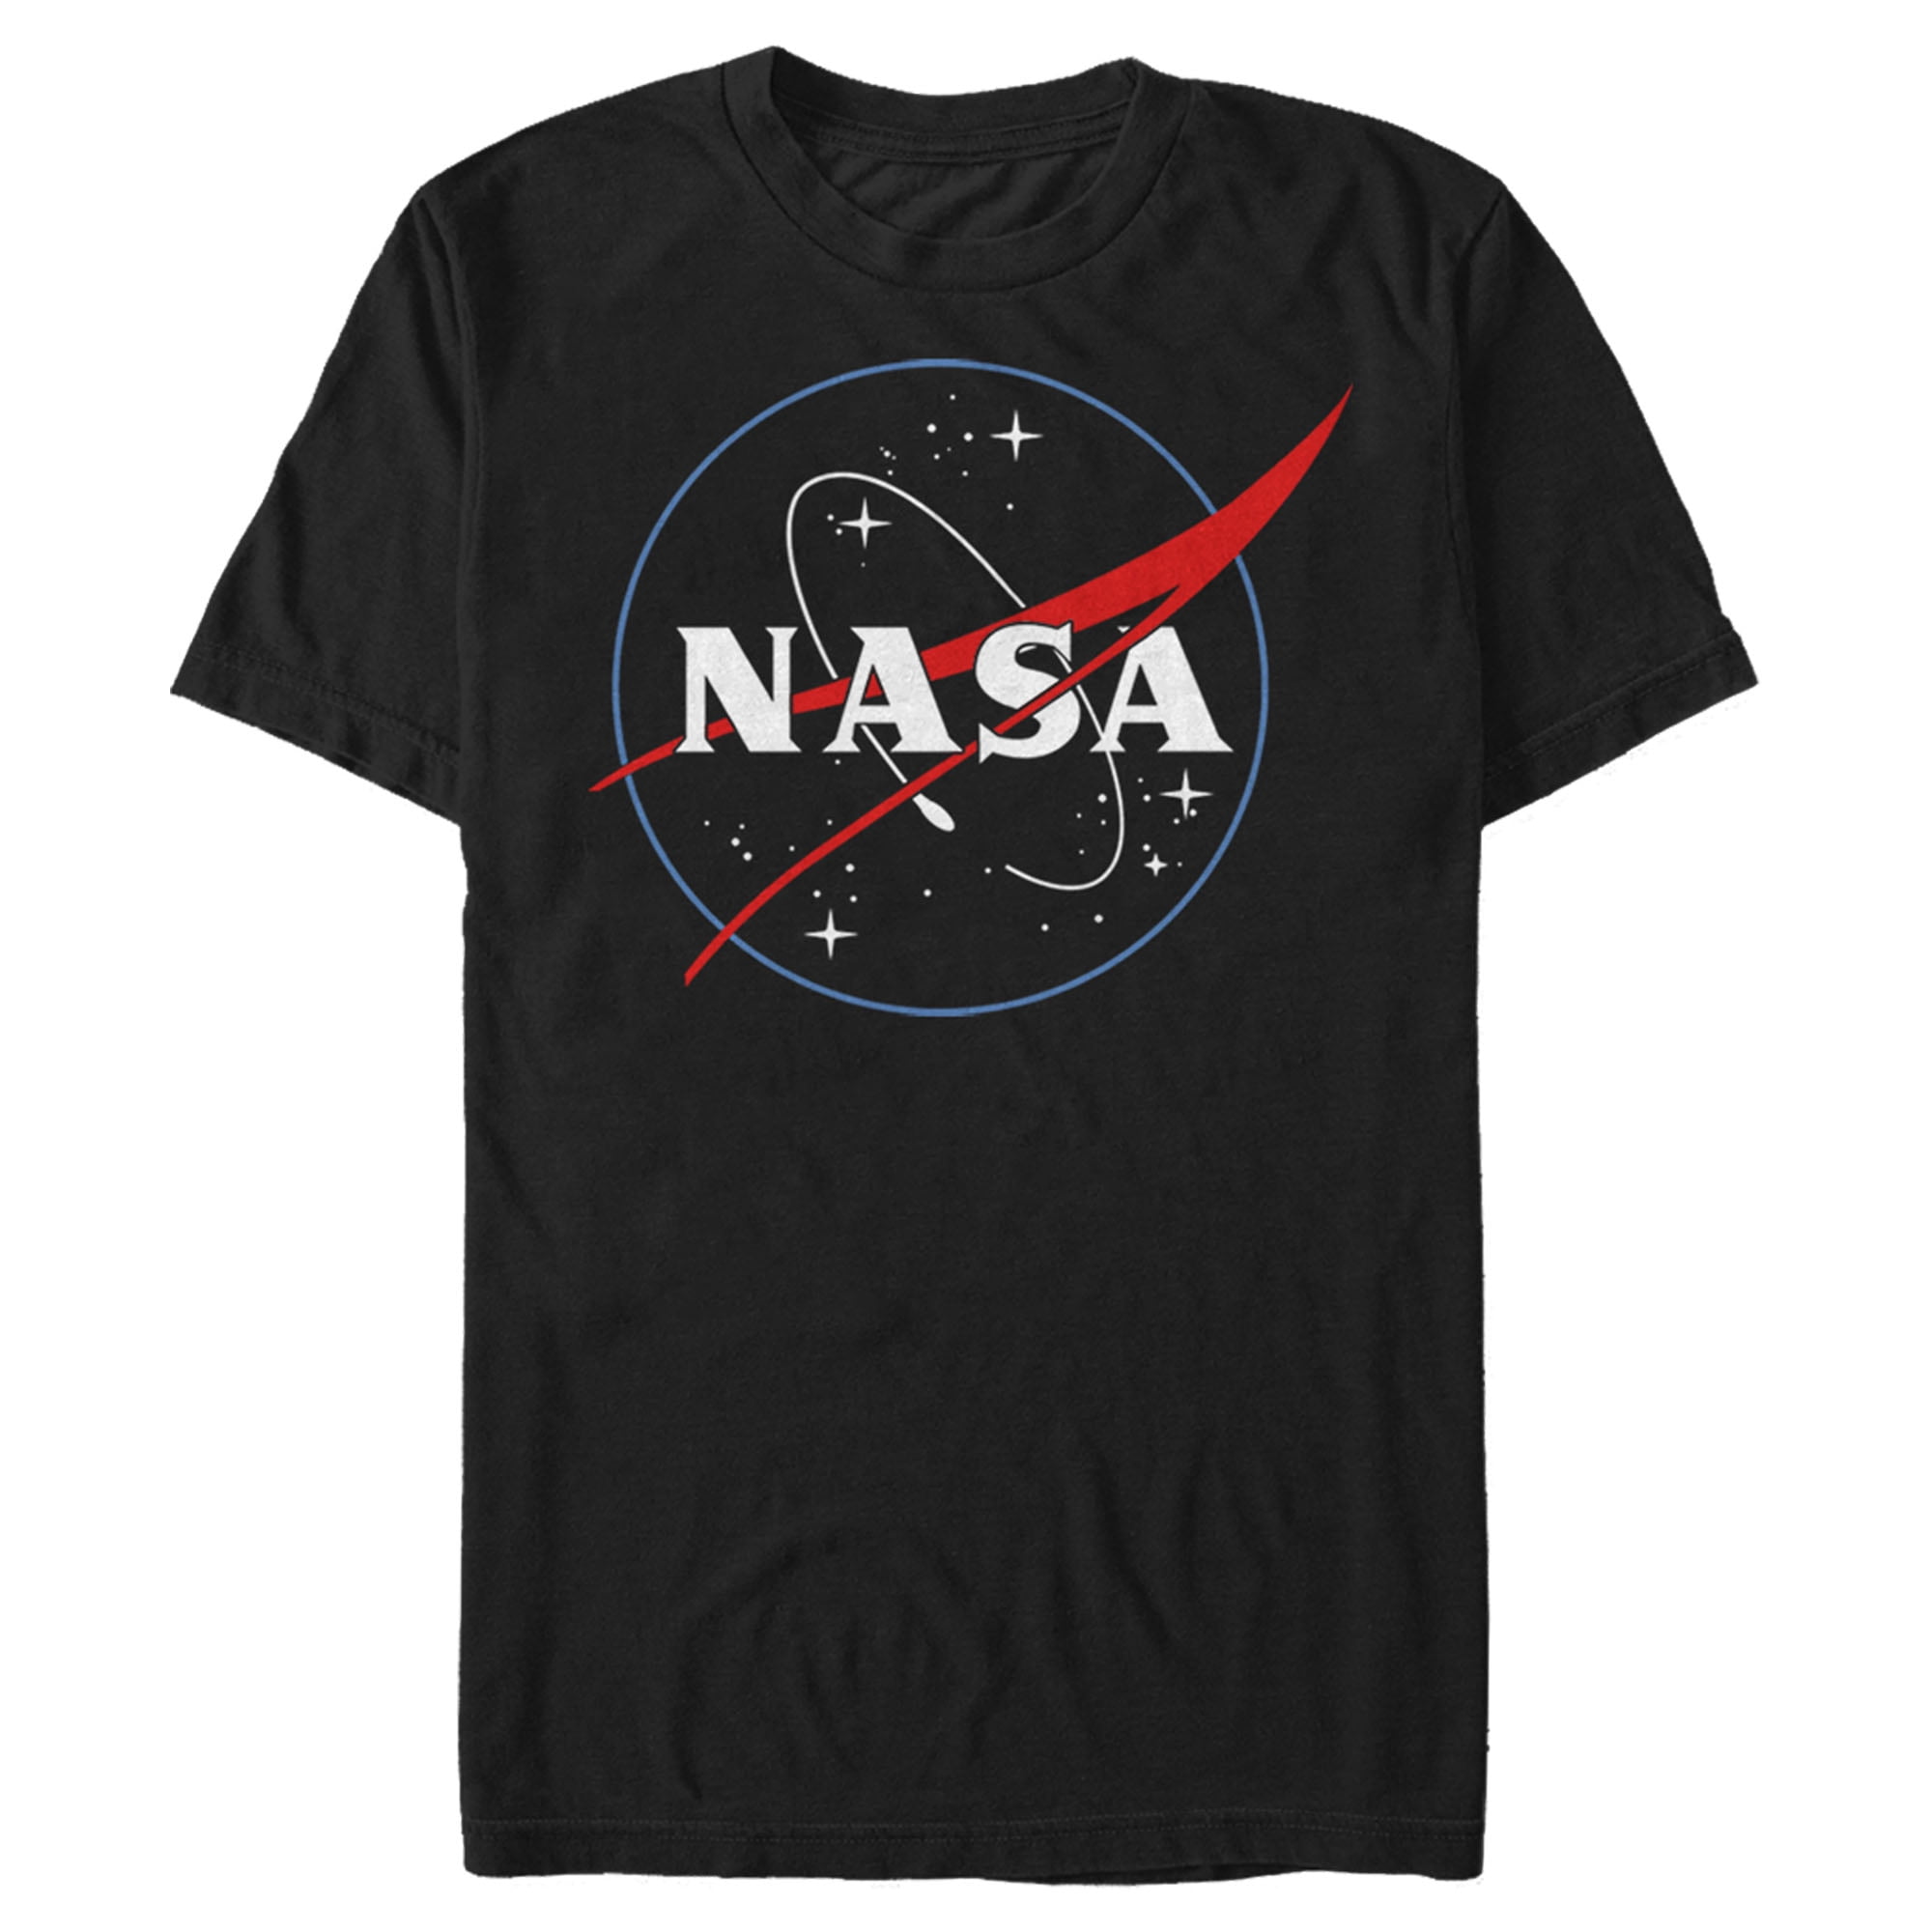 NASA - NASA Men's Outline Black And White T-Shirt - Walmart.com ...